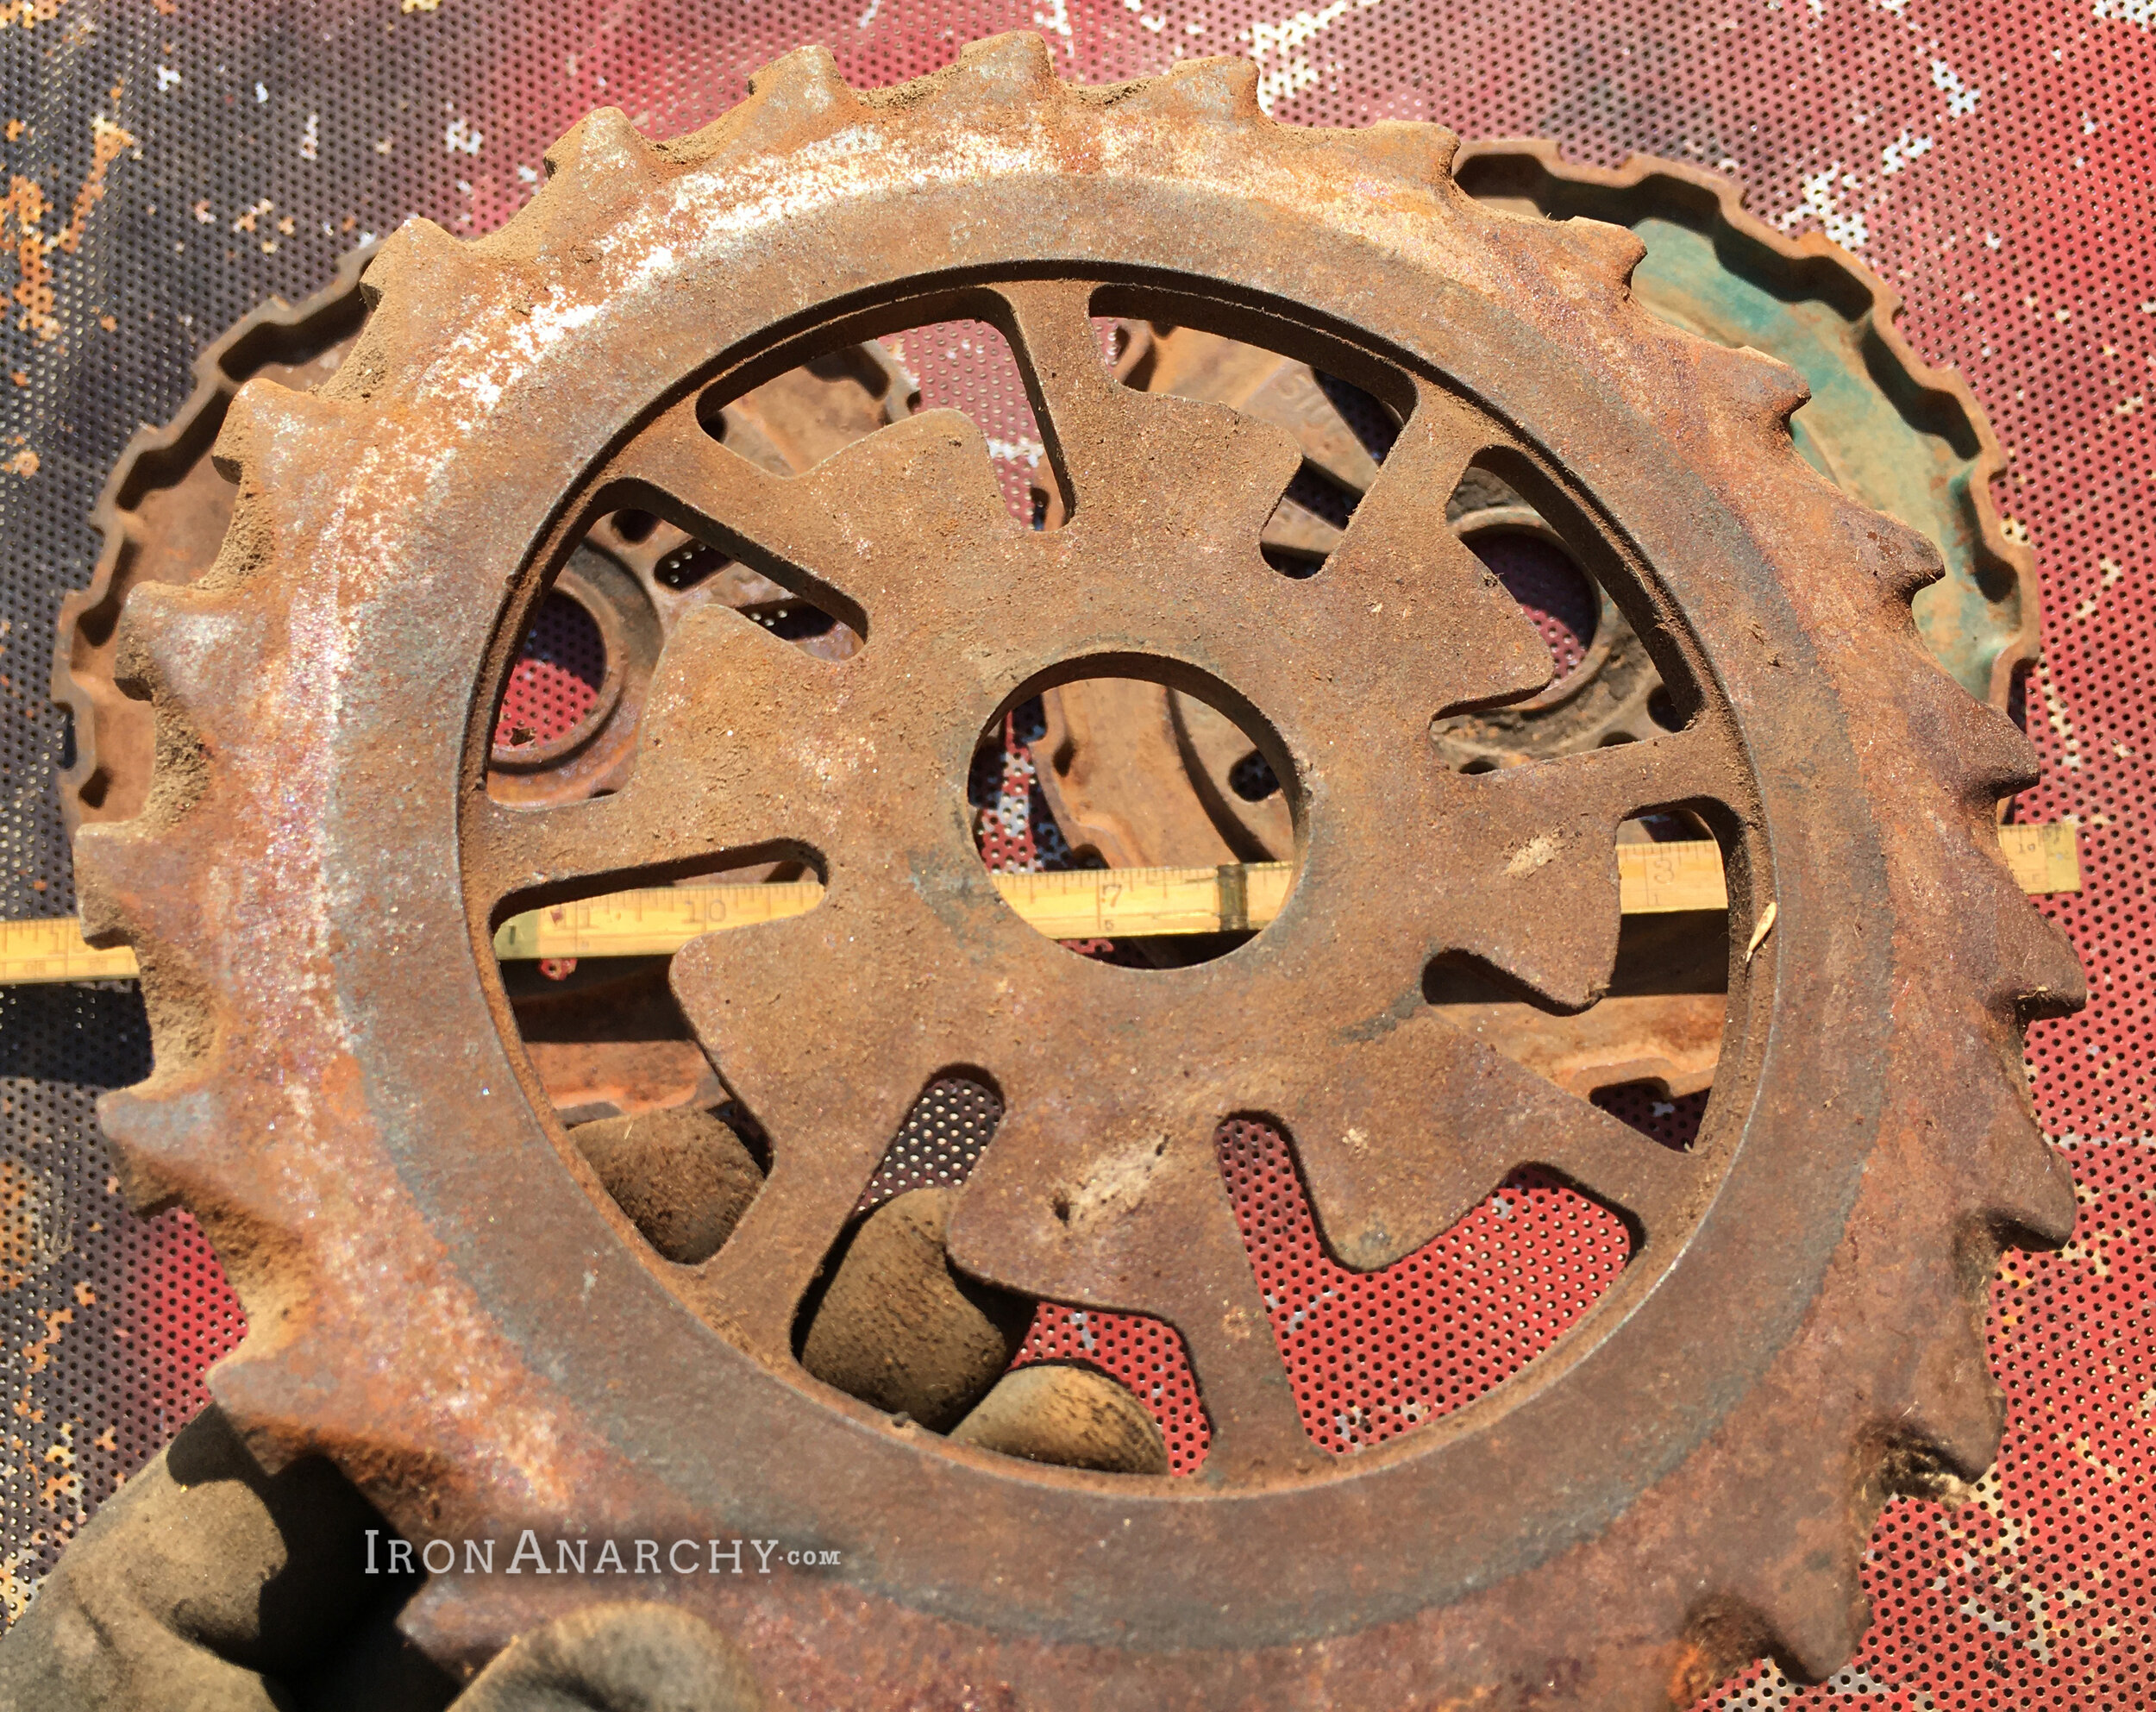 Antique Industrial Gears